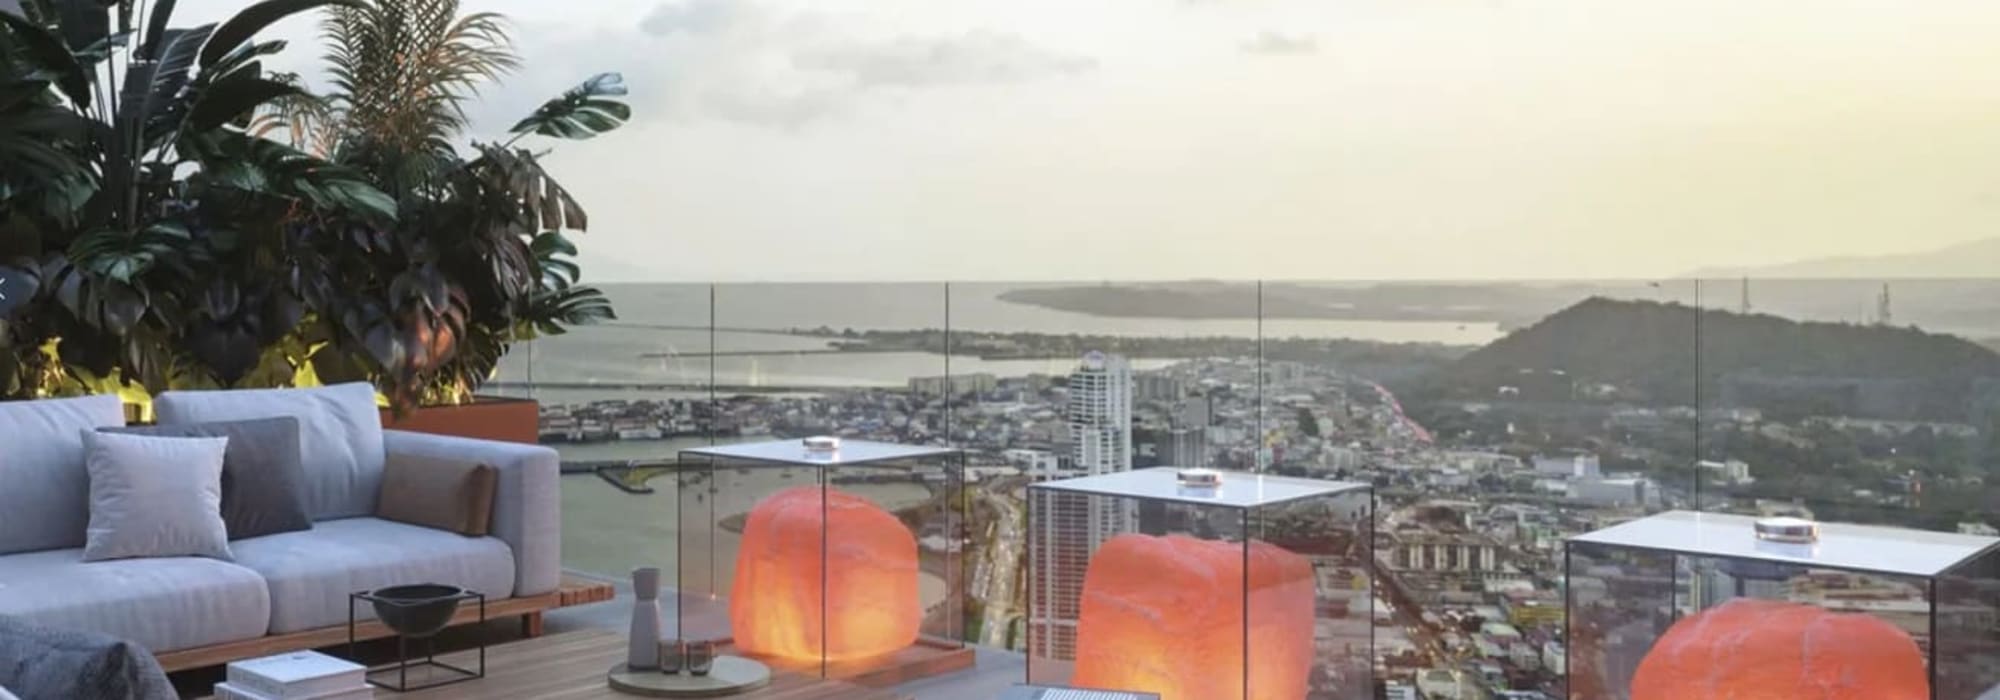 The Panoramic proyecto de lujo  ubicado en Marbella